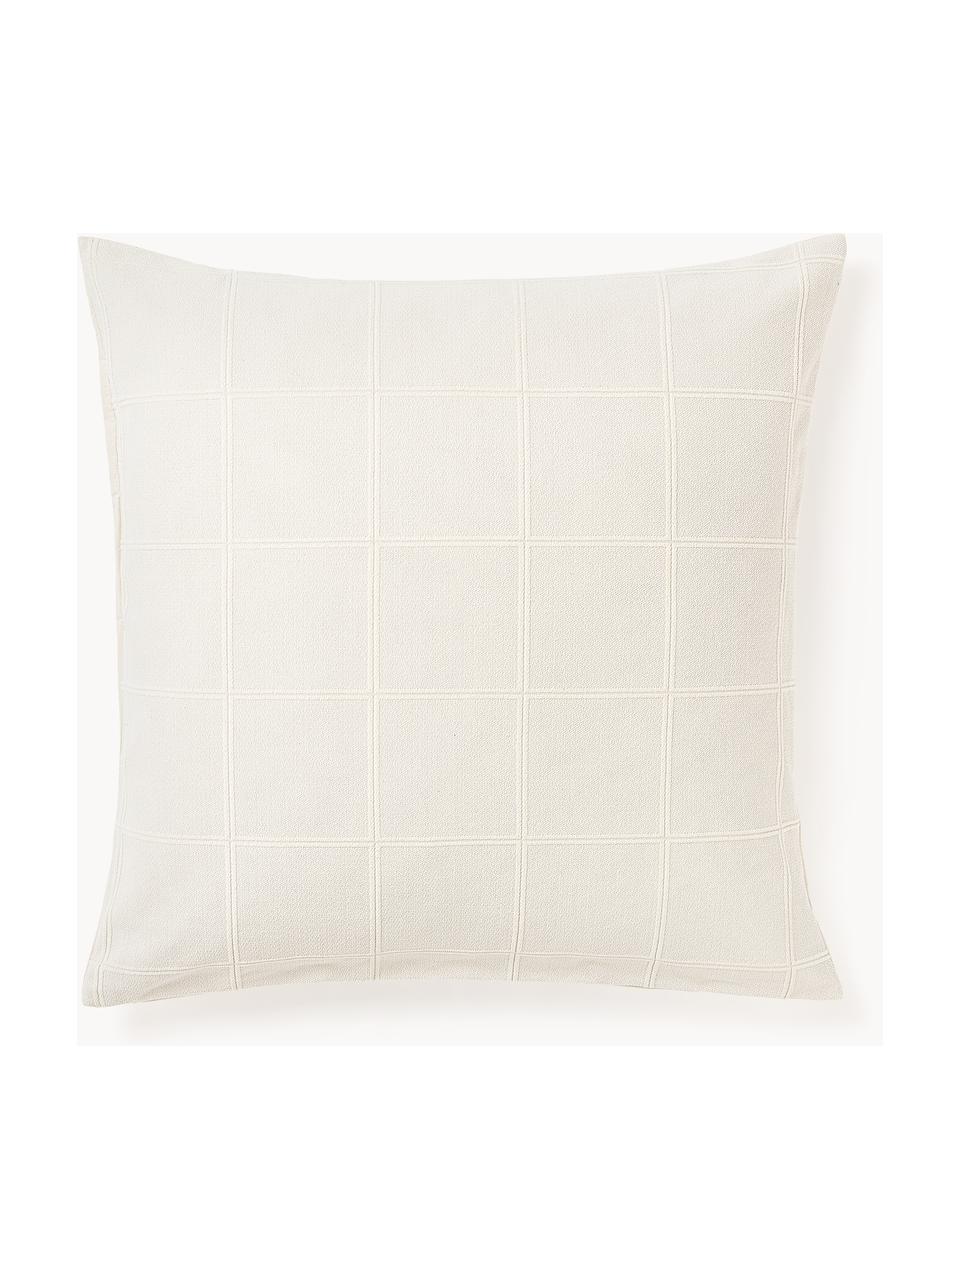 Kussensloop Vivienne met getuft ruitpatroon, Voorzijde: gebroken wit Achterzijde: crèmewit, B 60 x L 70 cm